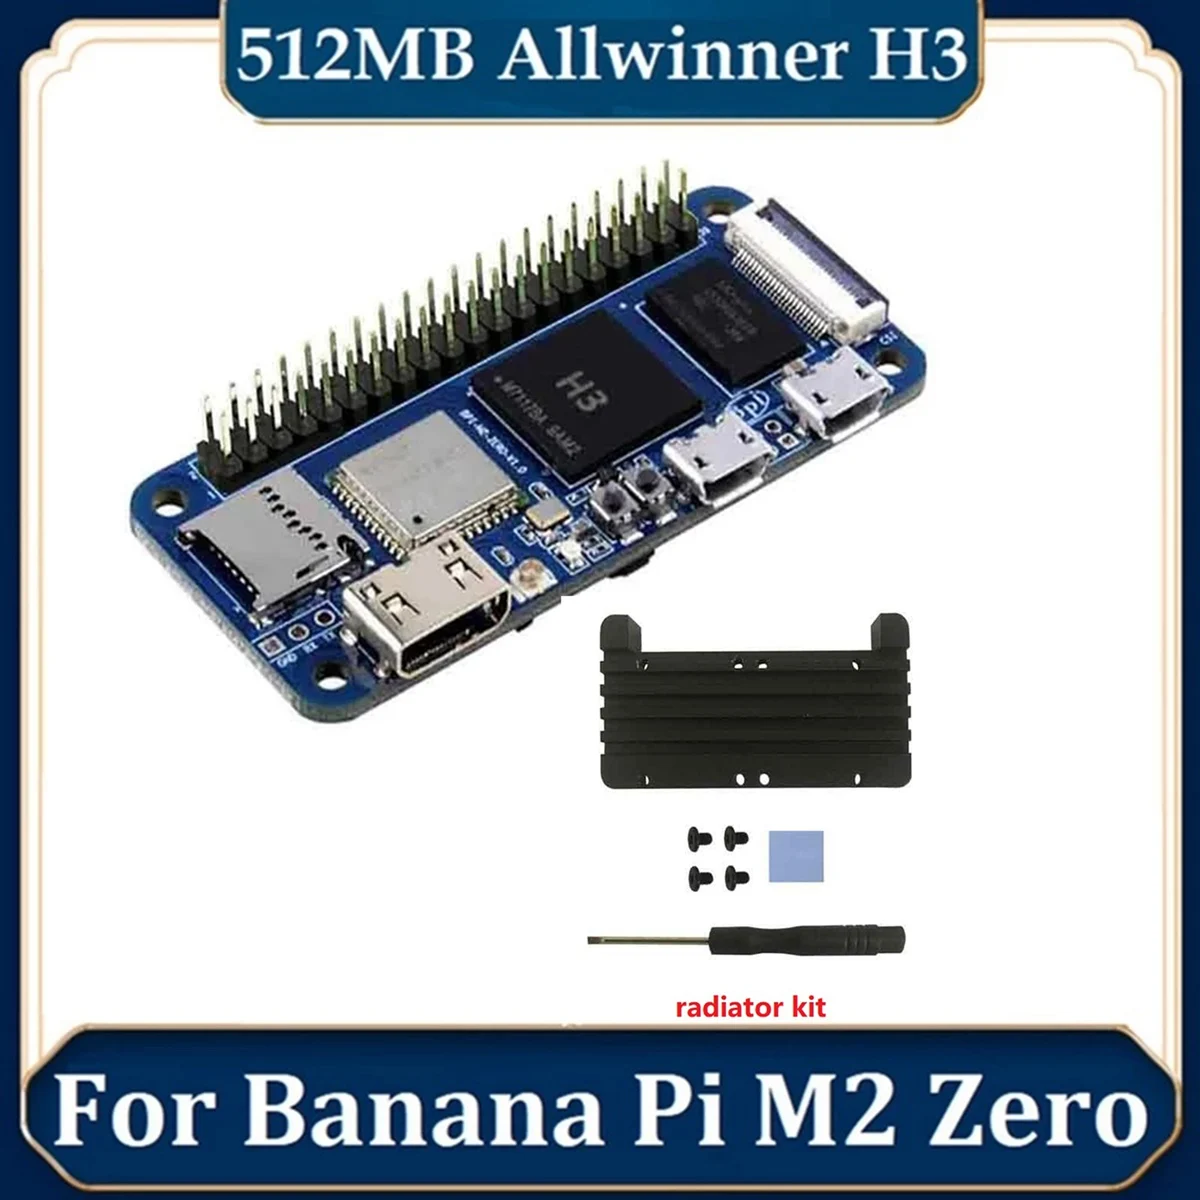 

For Banana Pi M2 Zero Alliwnner H3 Quad Core Cortex-A7 512M DDR3 RAM Open Source Computer Development Board BPI-M2 Zero